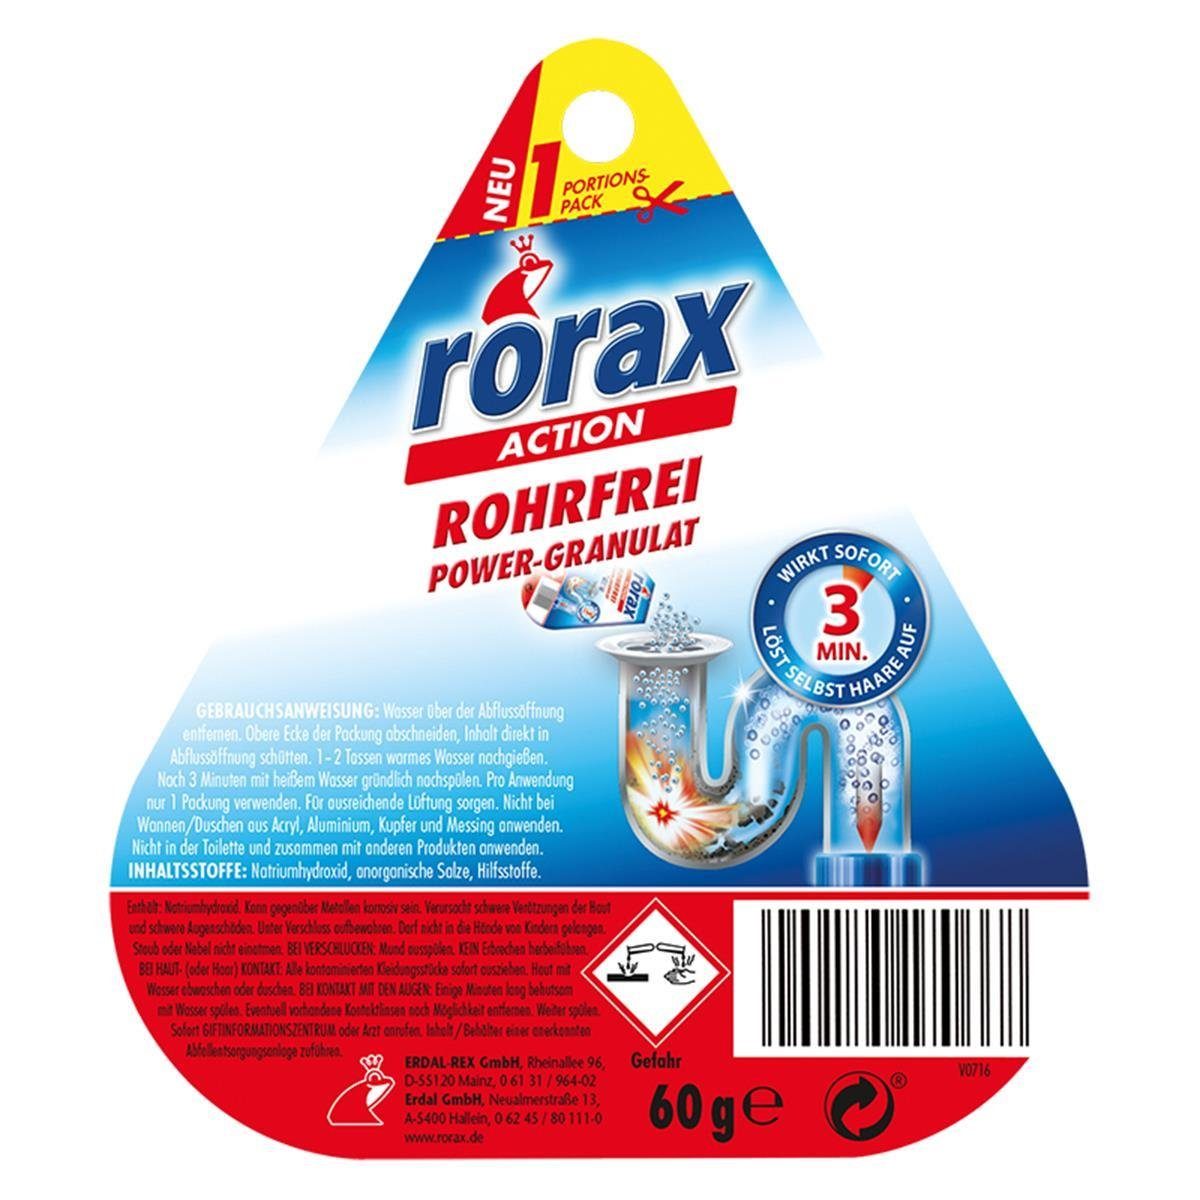 rorax rorax Rohrfrei Power-Granulat Portionspack 60g - Wirkt sofort & löst s Rohrreiniger